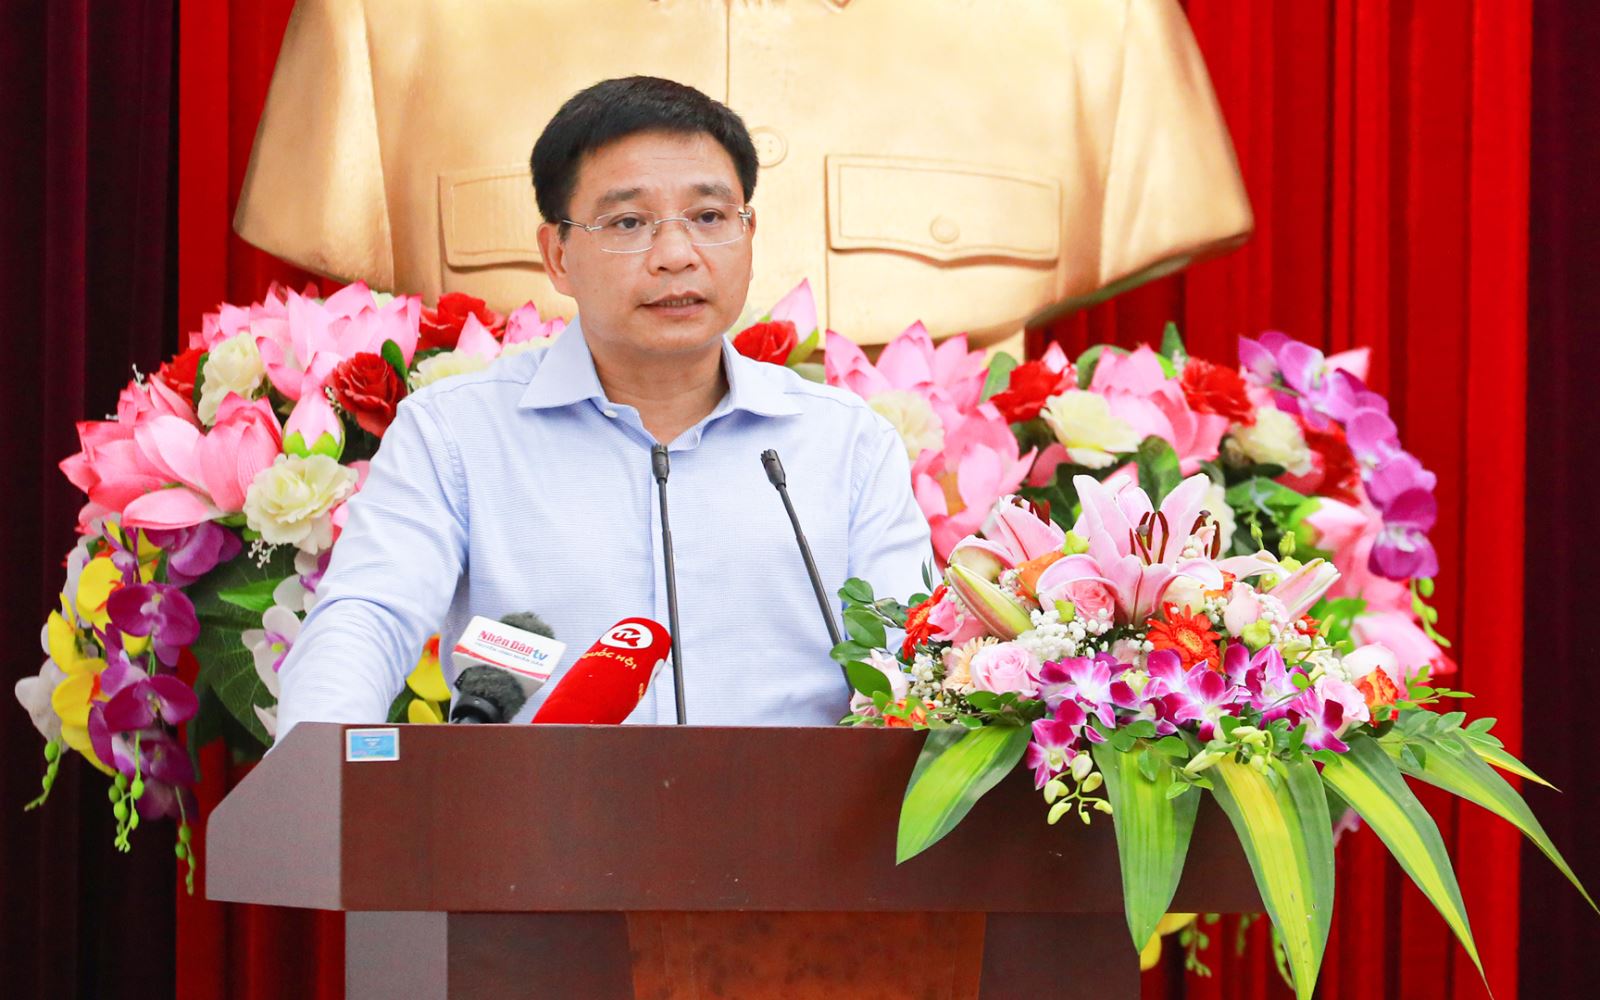 Bộ trưởng Nguyễn Văn Thắng lưu ý giải ngân vốn đầu tư công rất nặng nề - Ảnh 1.